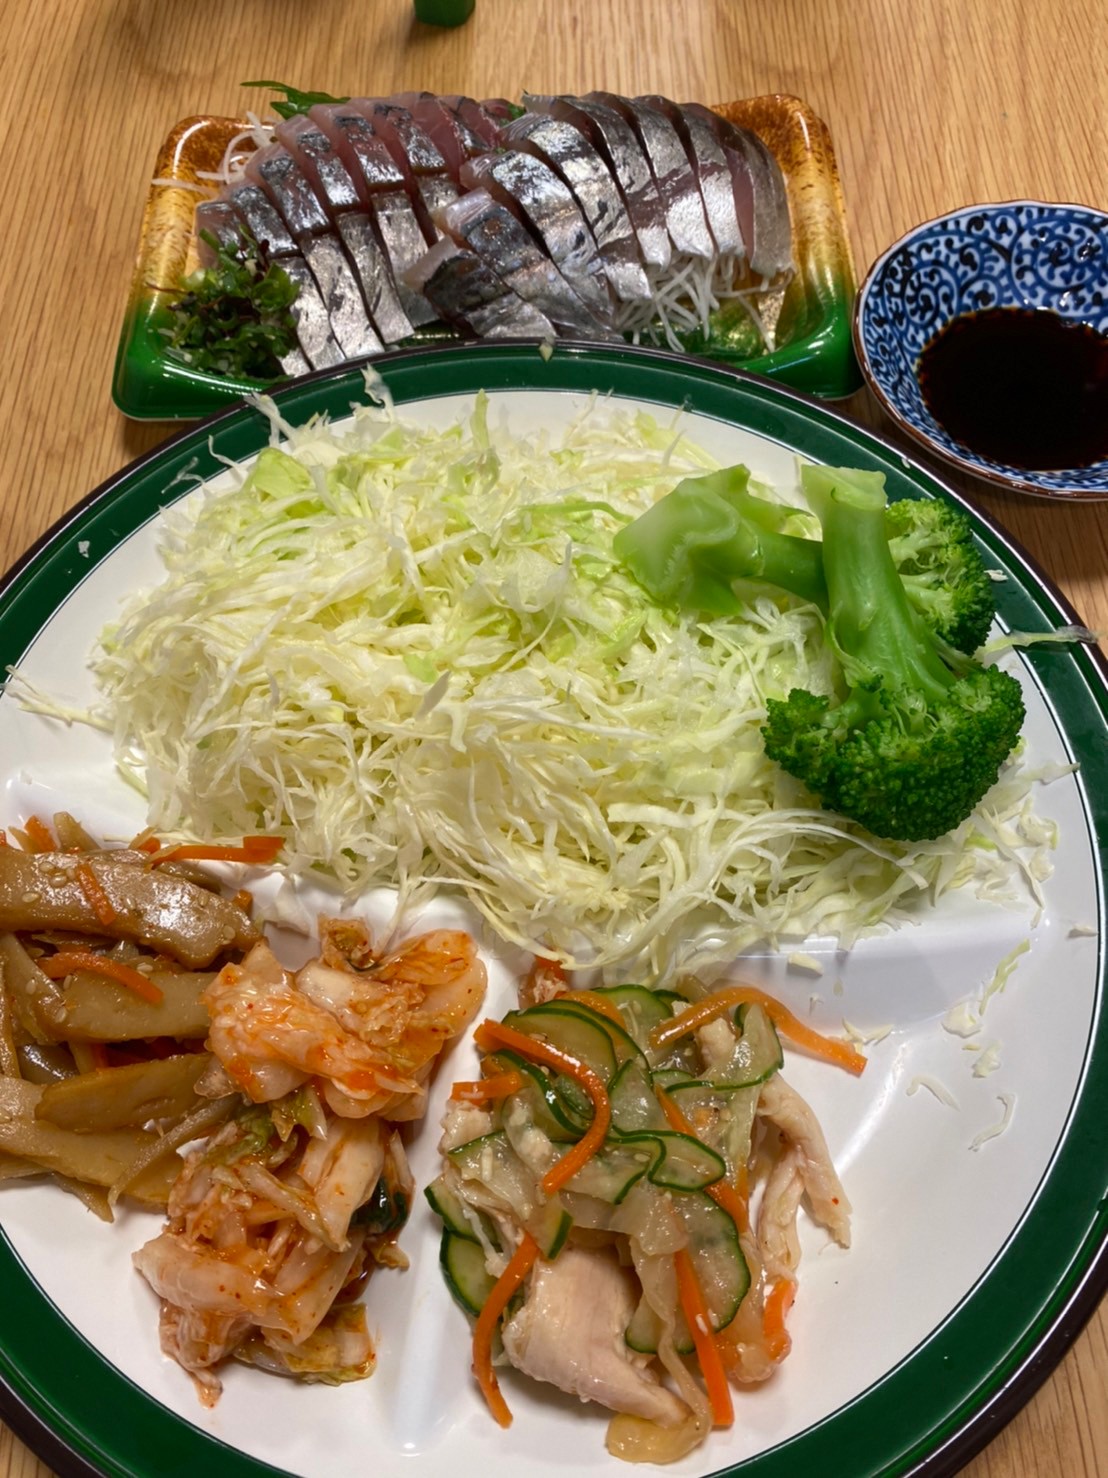 野菜とお魚で栄養バランスよいダイエットボディメイク食事例